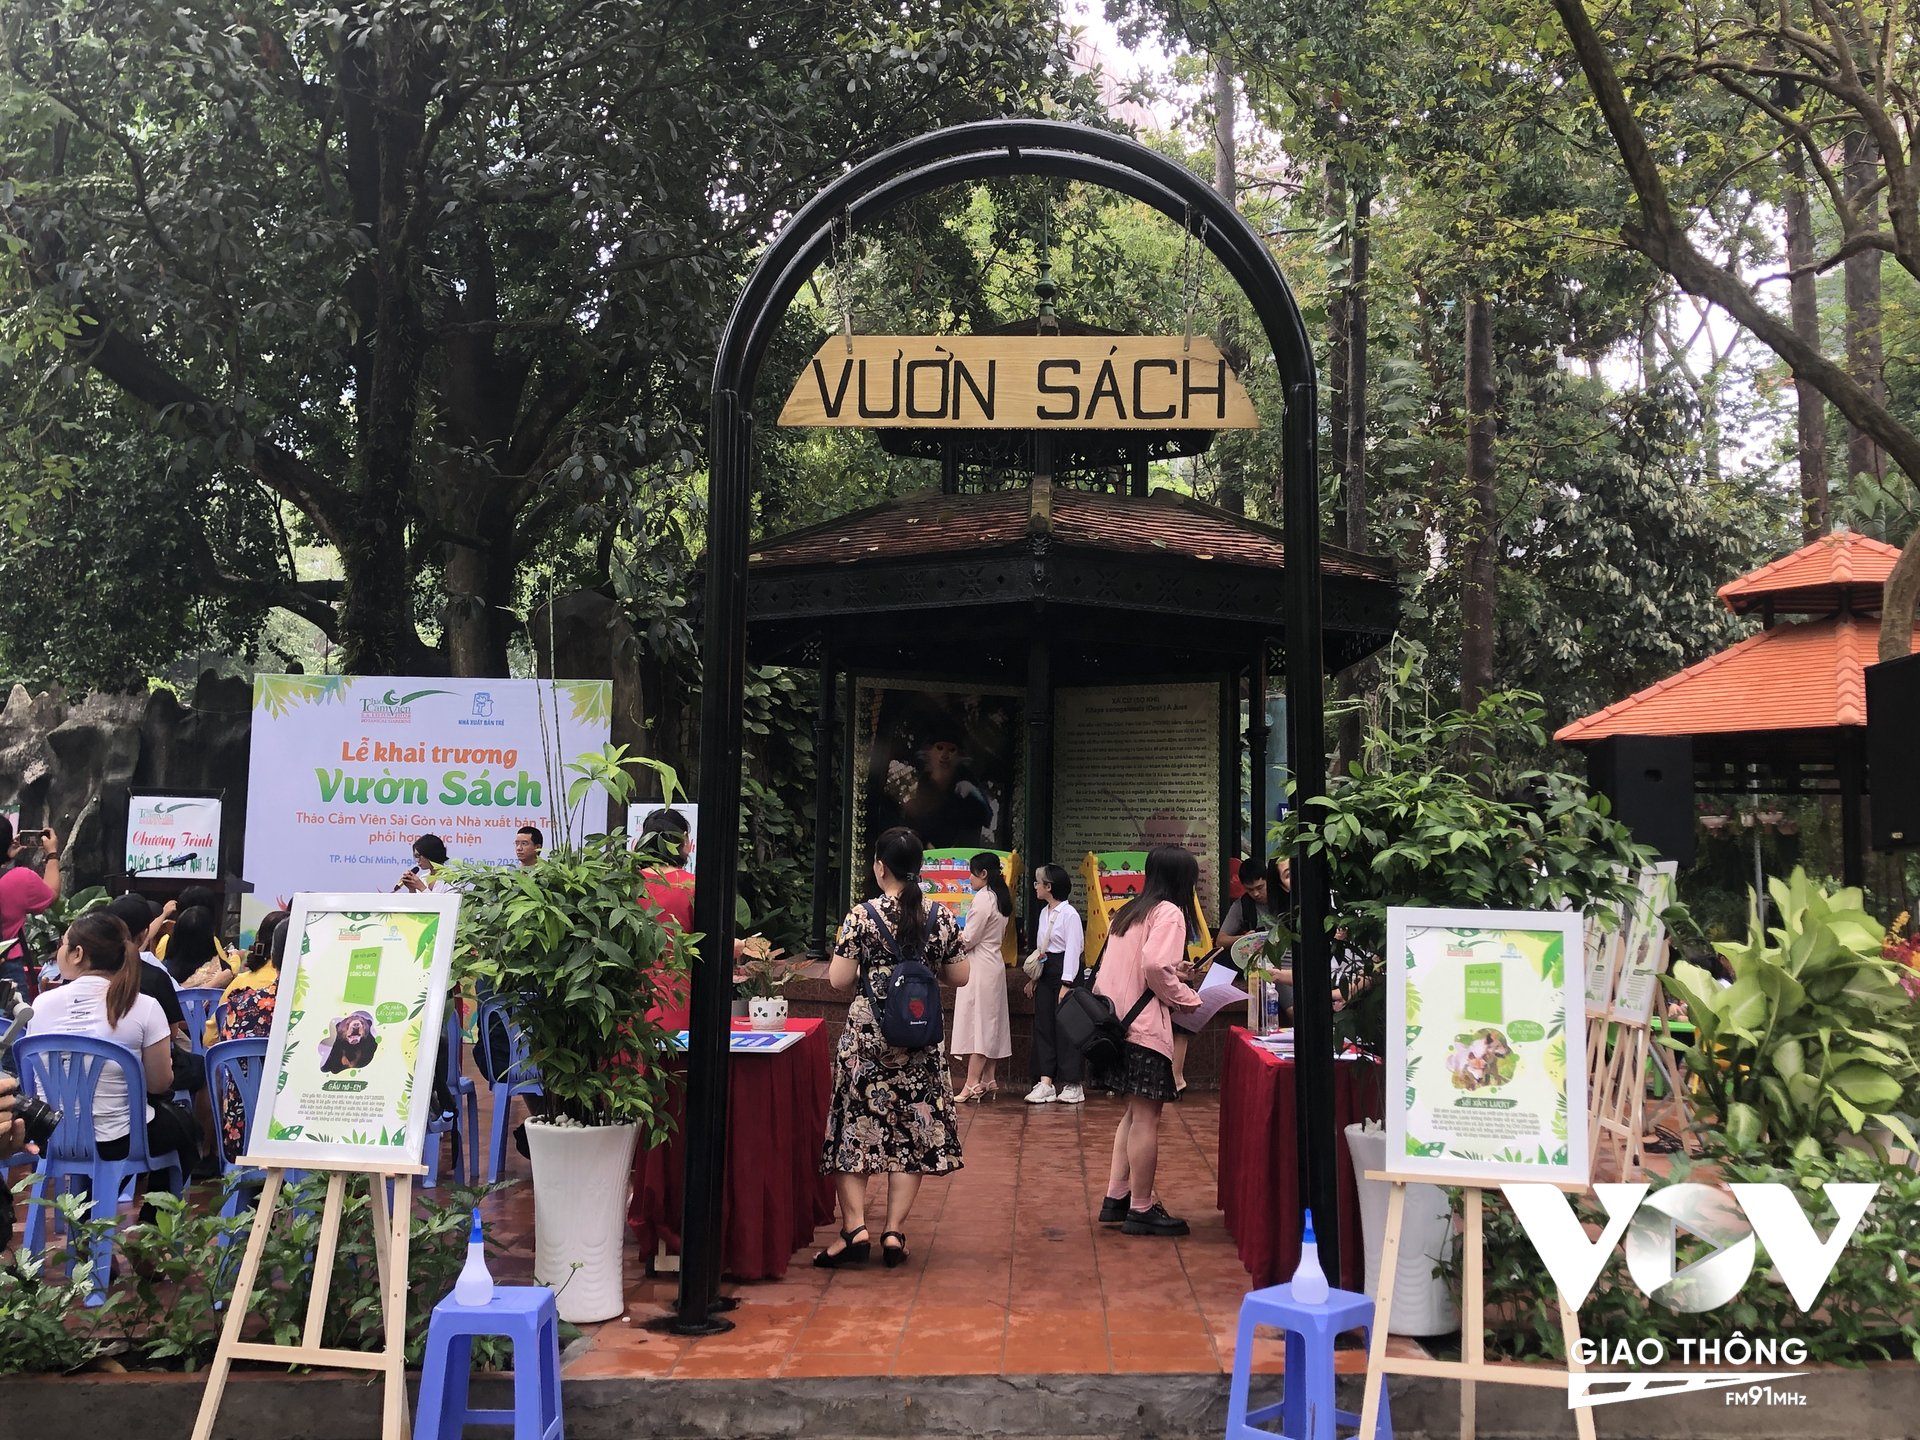 “Vườn sách” Thảo Cầm Viên Sài Gòn sẽ được mở cửa xuyên suốt các ngày trong năm và hoàn toàn miễn phí đối với những ai đến đọc sách.